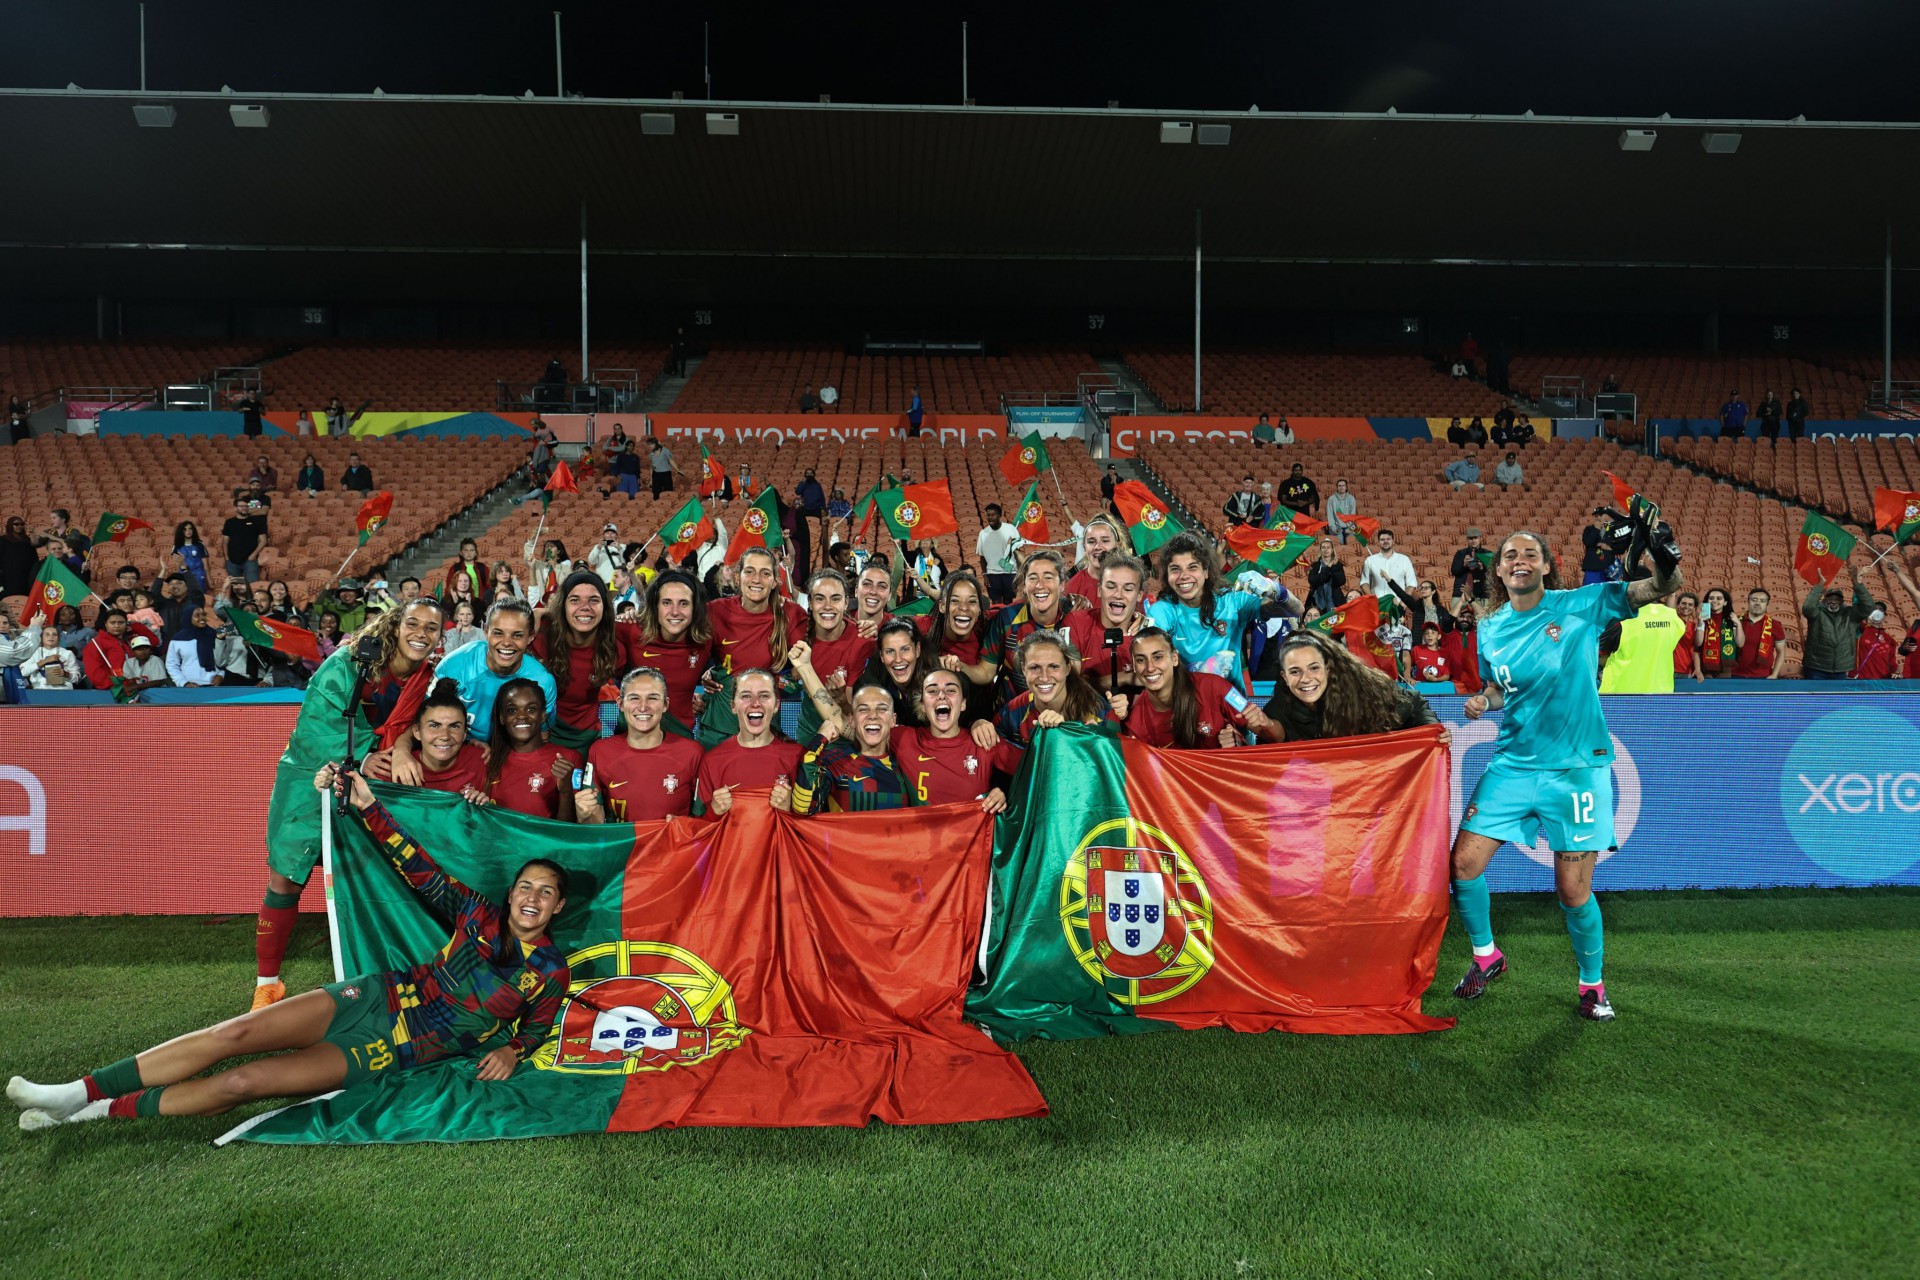 Portugal garantiu a vaga na Copa do Mundo Feminina ao vencer Camarões na Final do Playoff intercontinental - Foto: Divulgação/Twitter @selecaoportugal